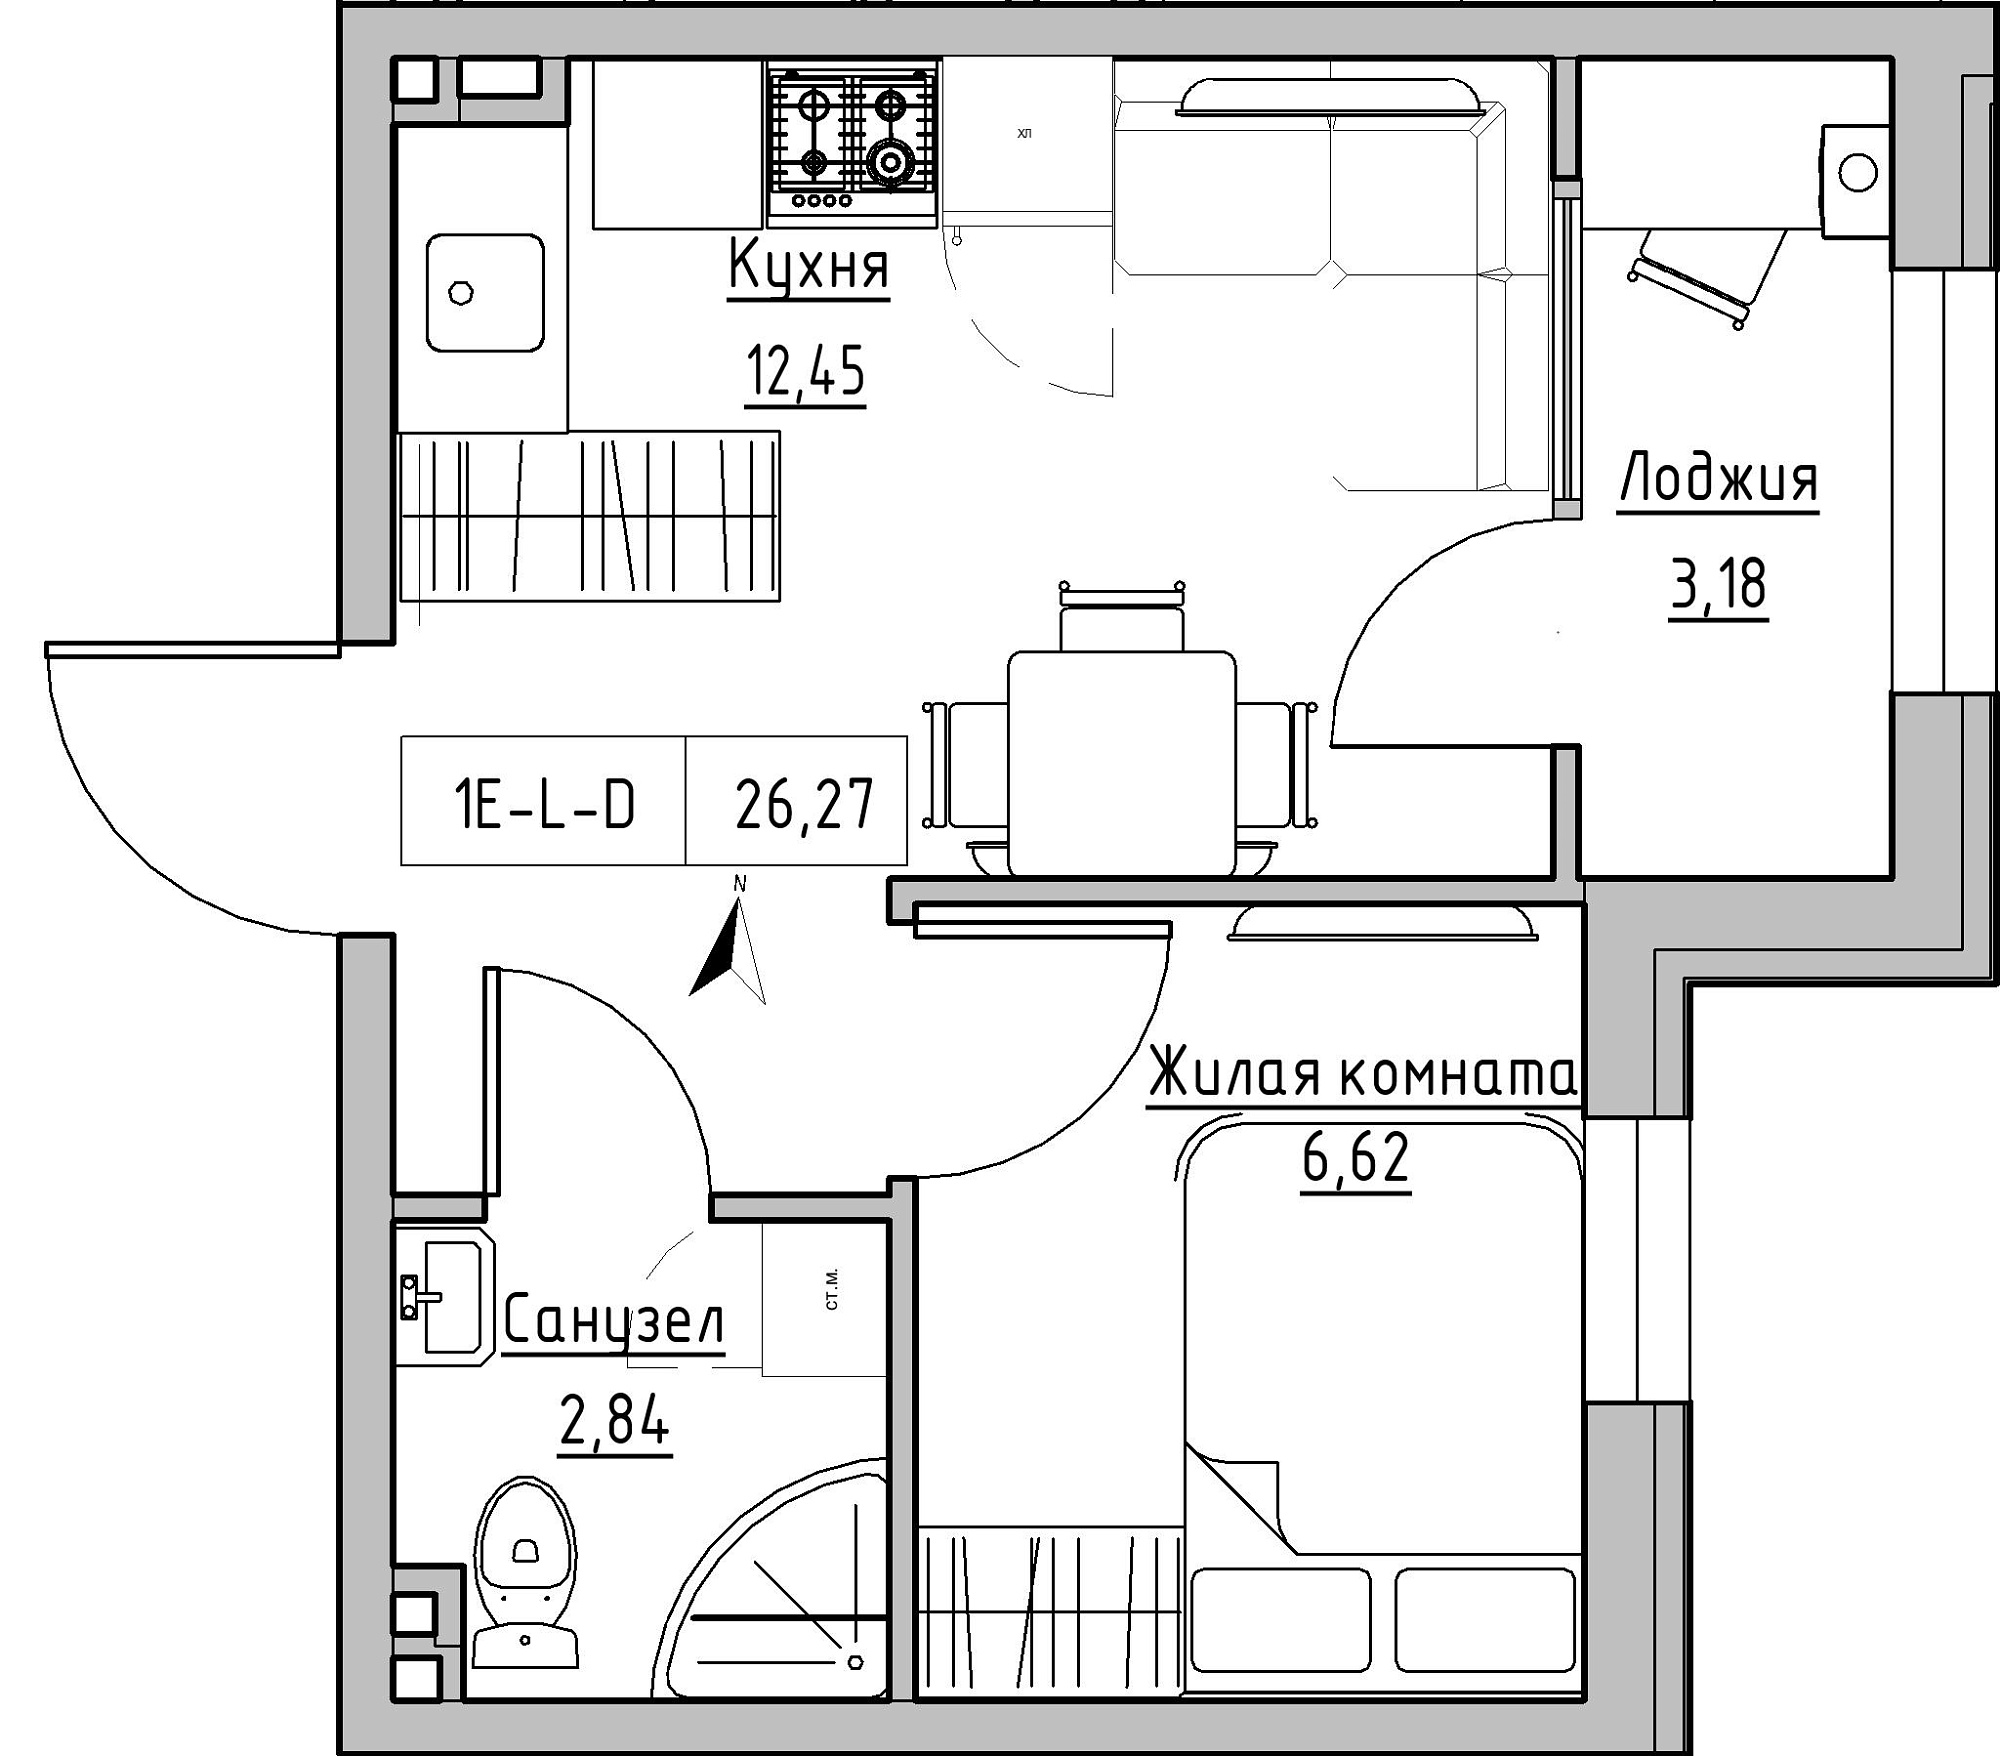 Планування 1-к квартира площею 26.27м2, KS-024-01/0015.